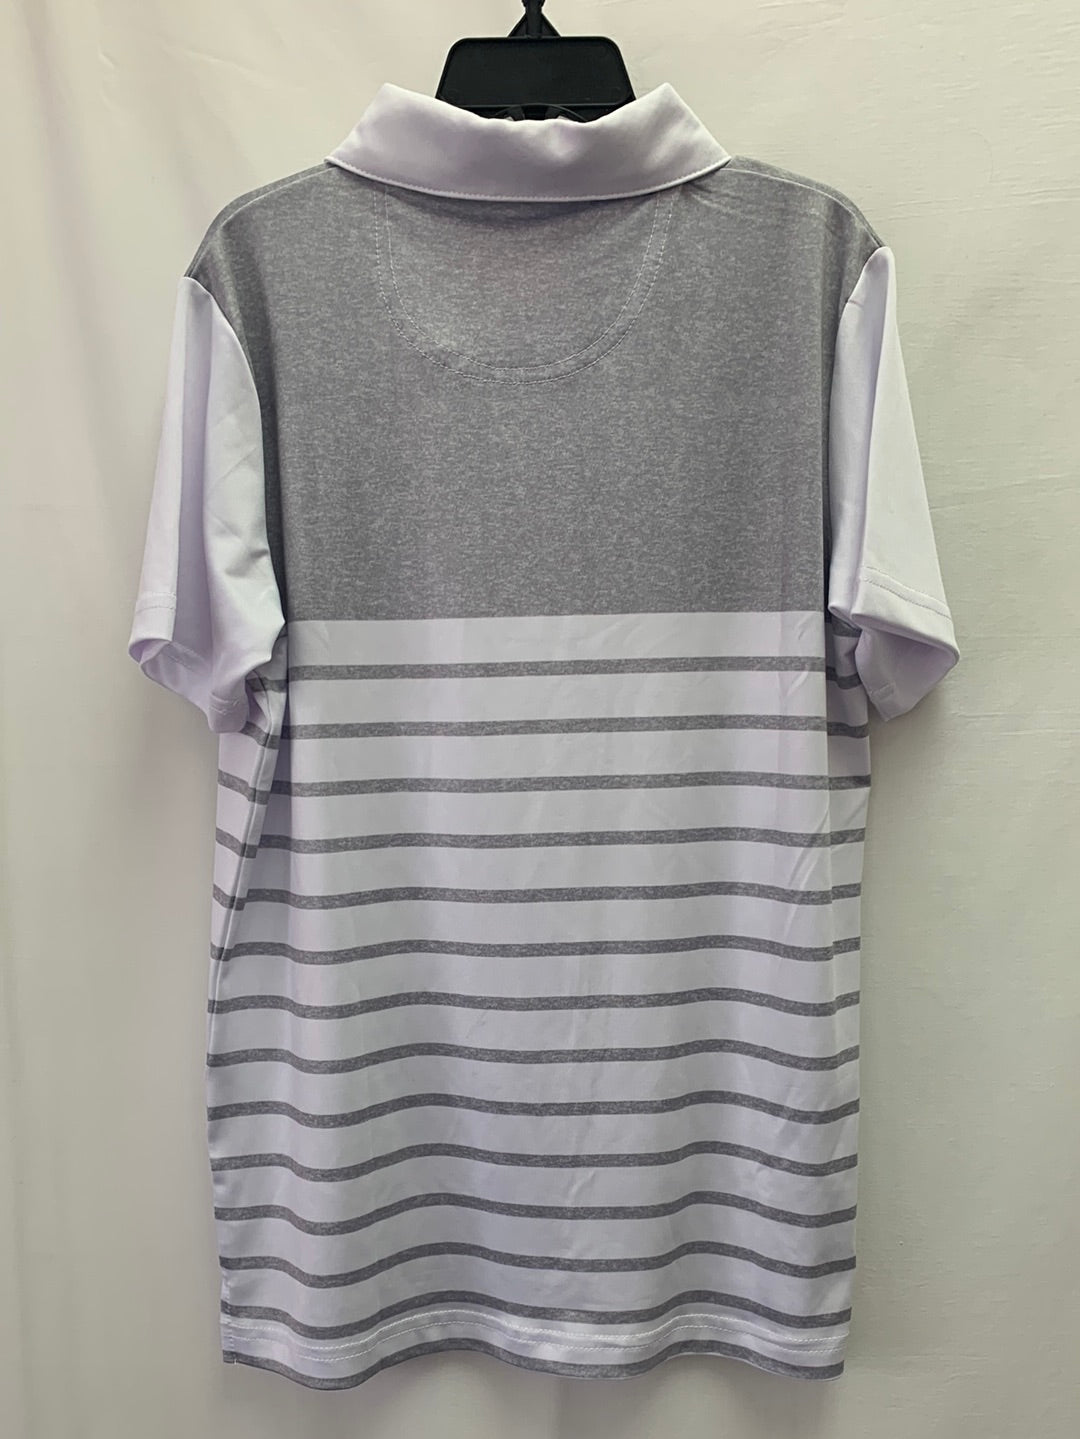 NWT - GARB gray stripe UPF 50+ Short Sleeve Polo Shirt - Age 5-6